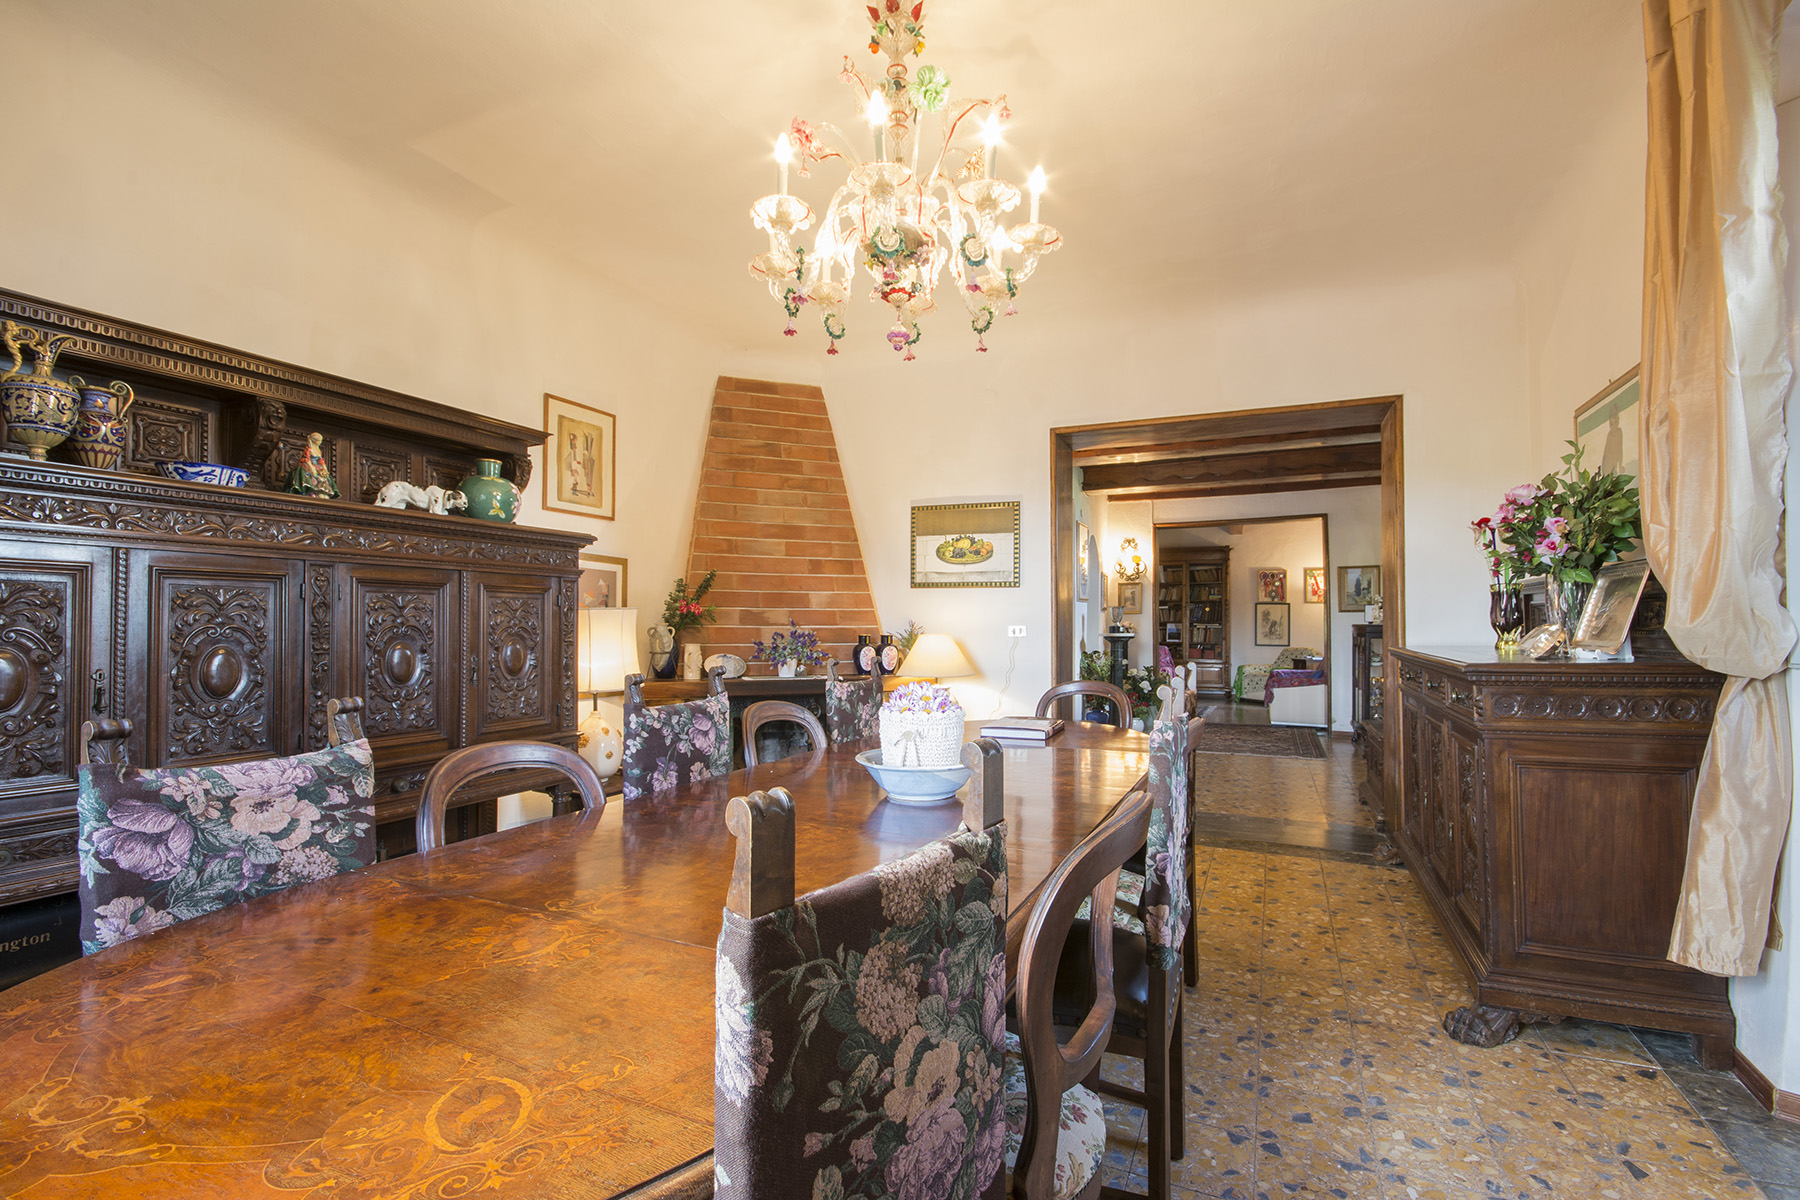 Villa in Vendita a Borgo San Lorenzo: 5 locali, 750 mq - Foto 9